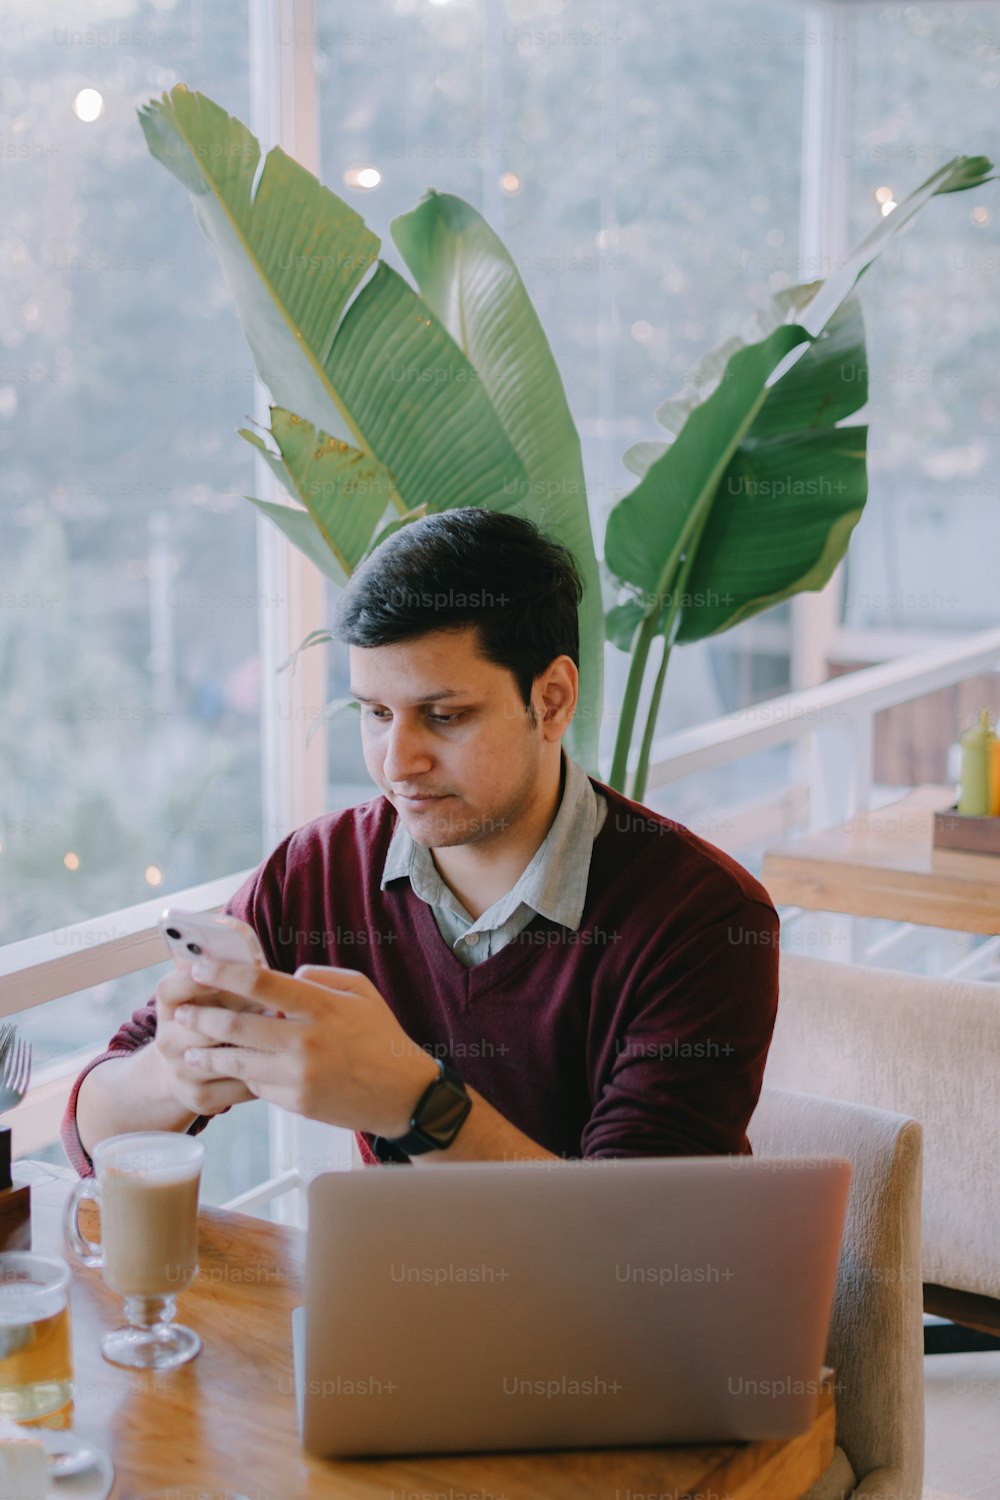 Un hombre sentado en una mesa mirando su teléfono celular